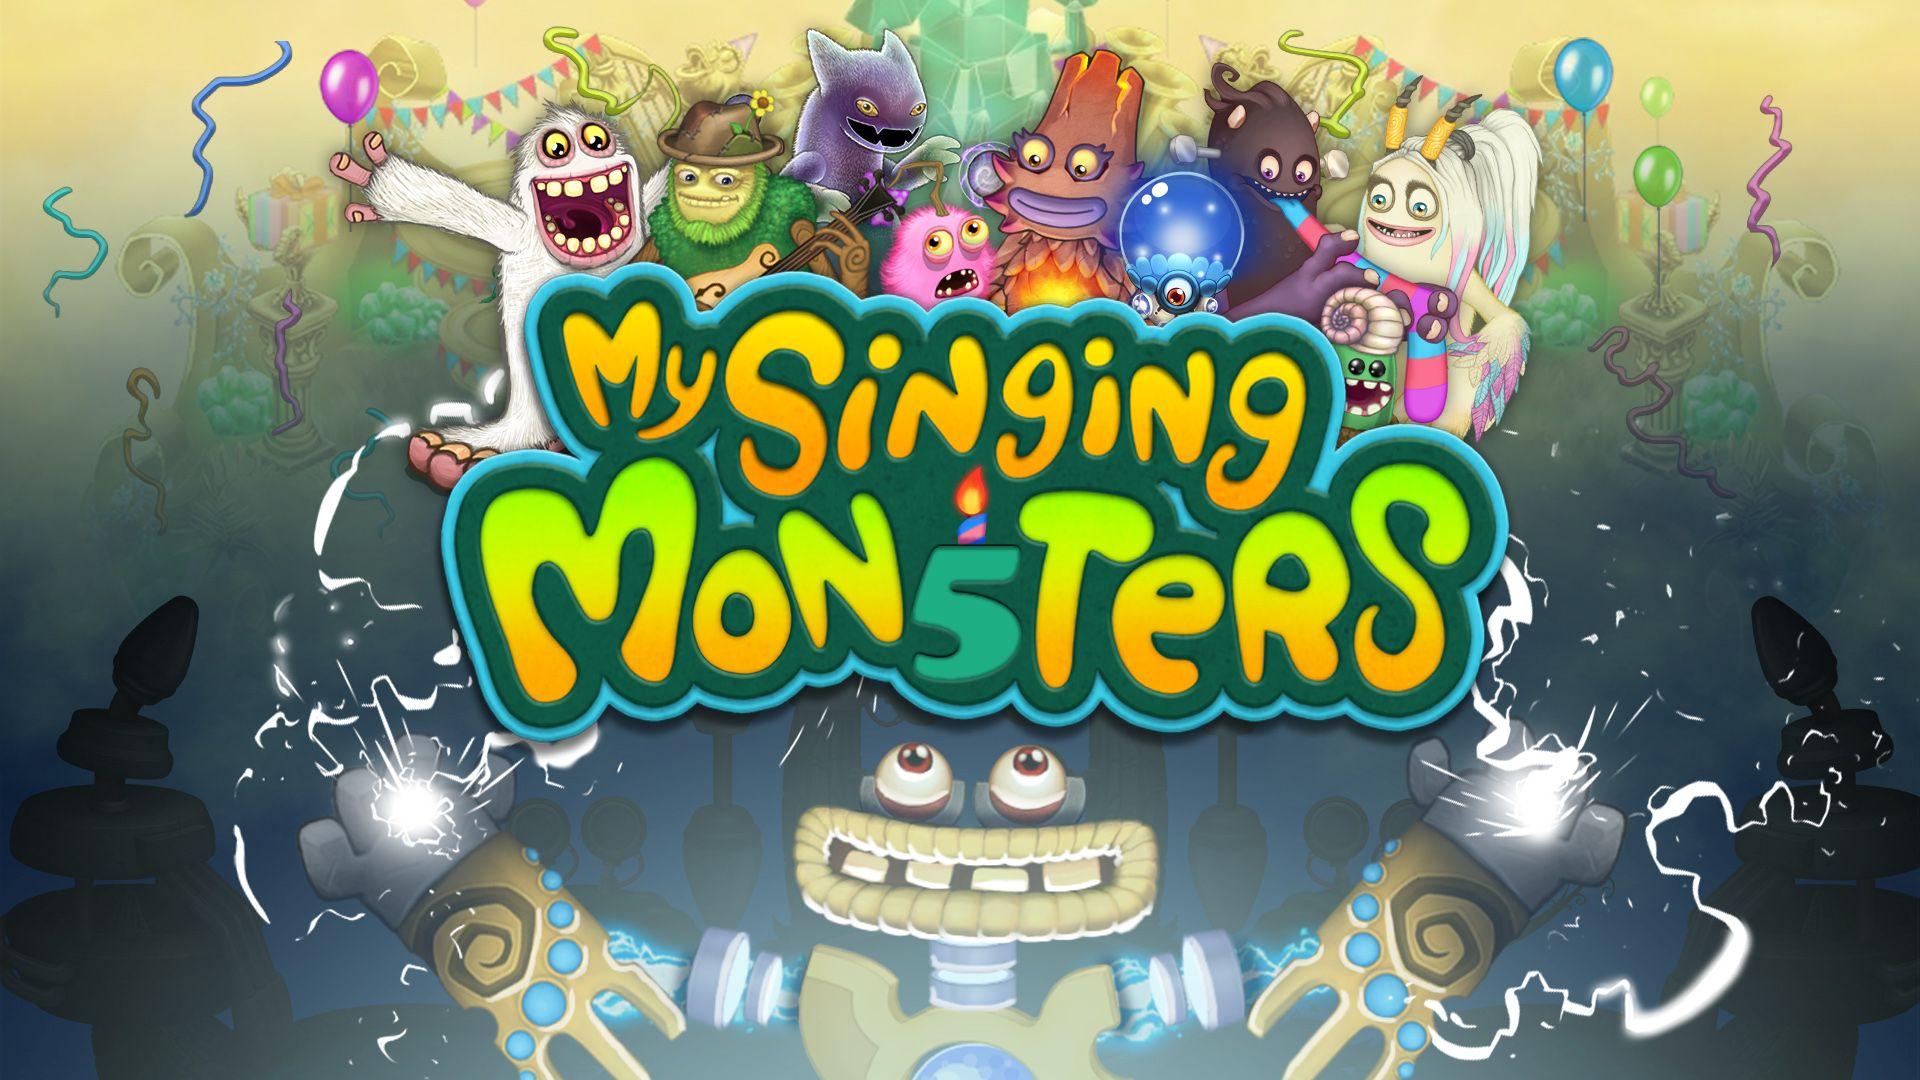 My Singing Monsters Wallpapers - Top Free My Singing Monsters